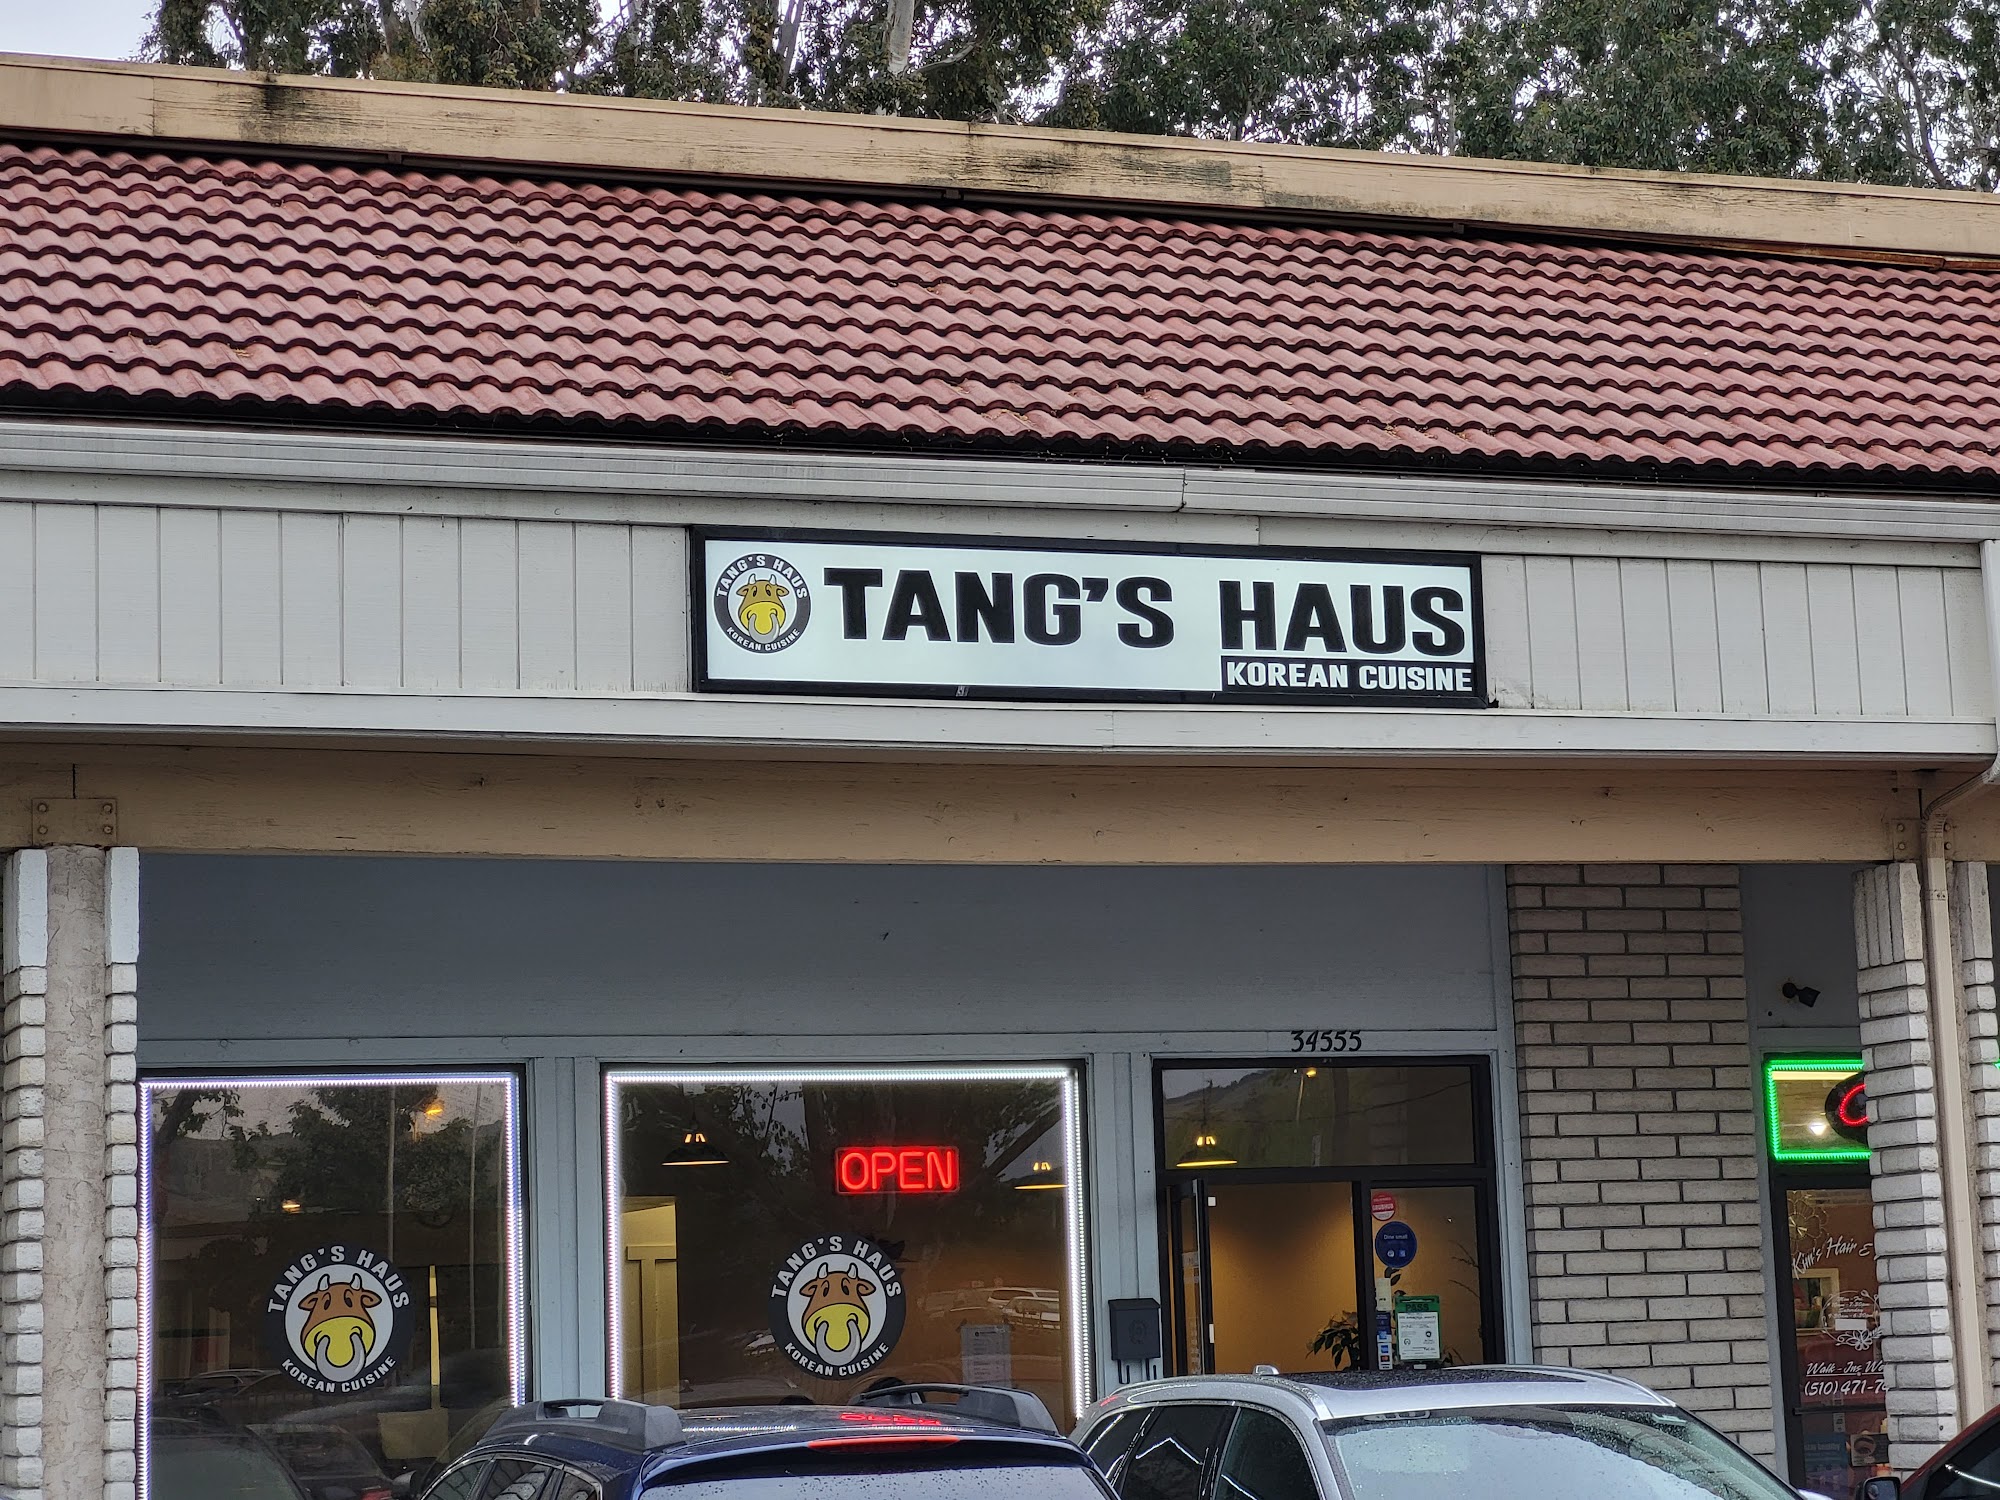 Tangs Haus